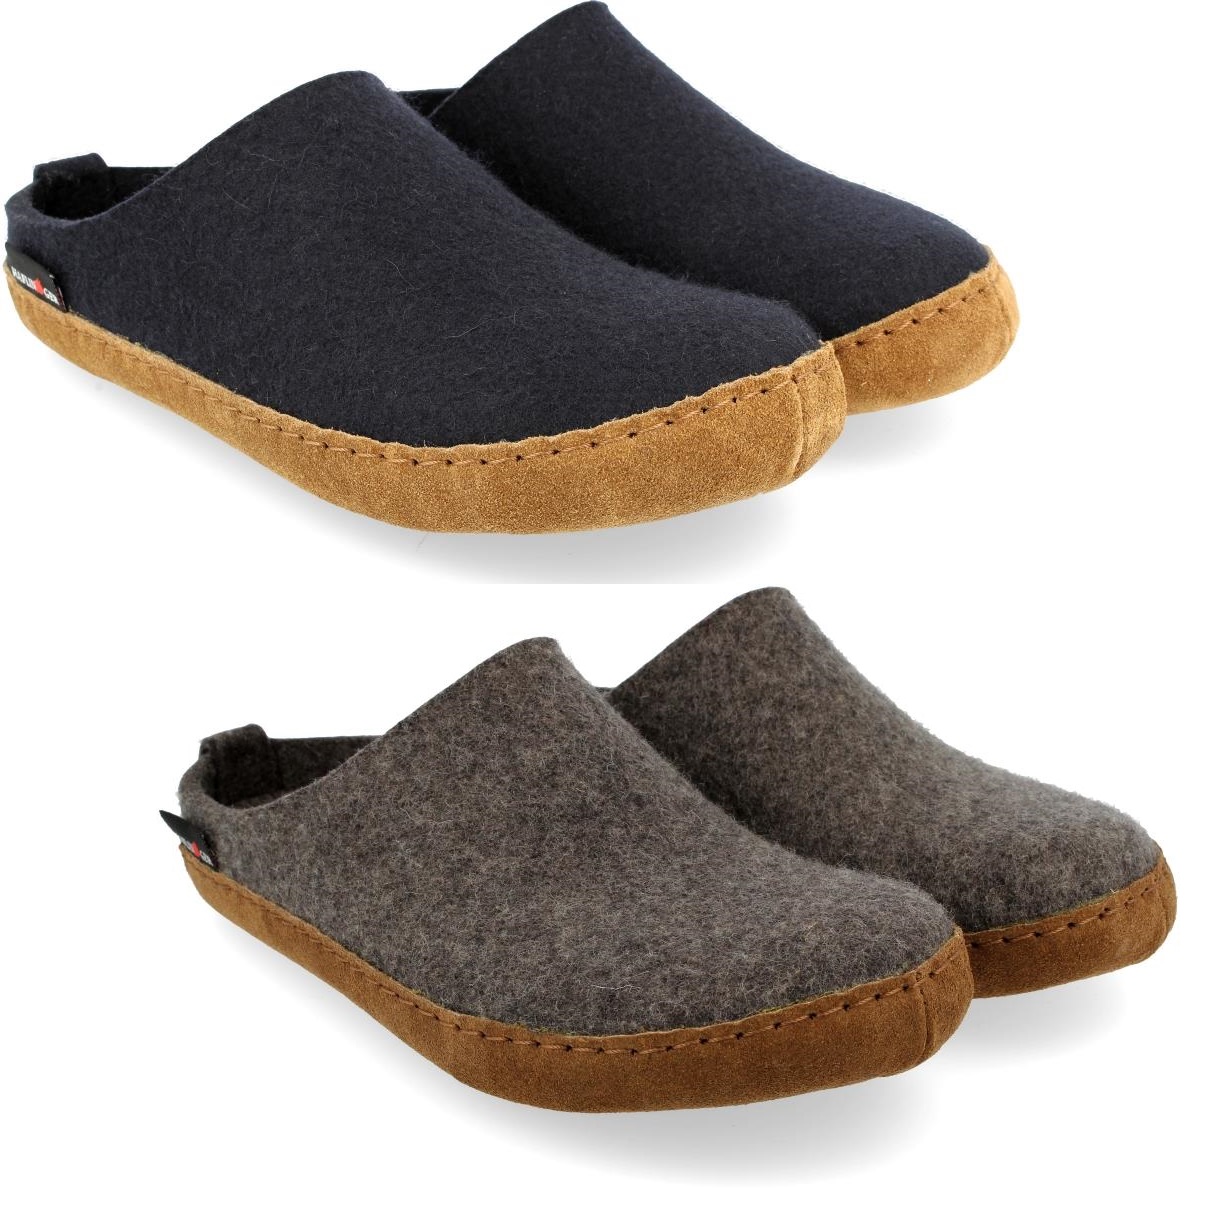 haflinger felt slippers